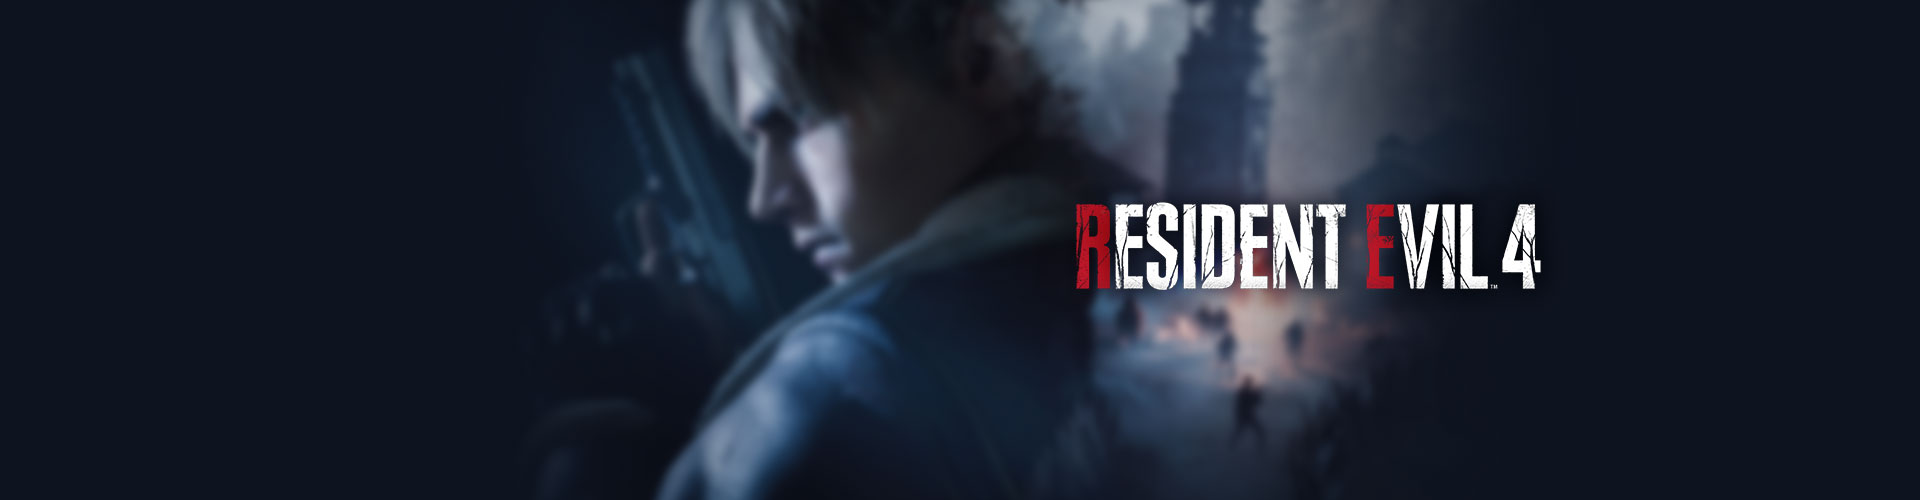 Configuration PC minimale, recommandée et 4K pour jouer à Resident Evil 4 Remake